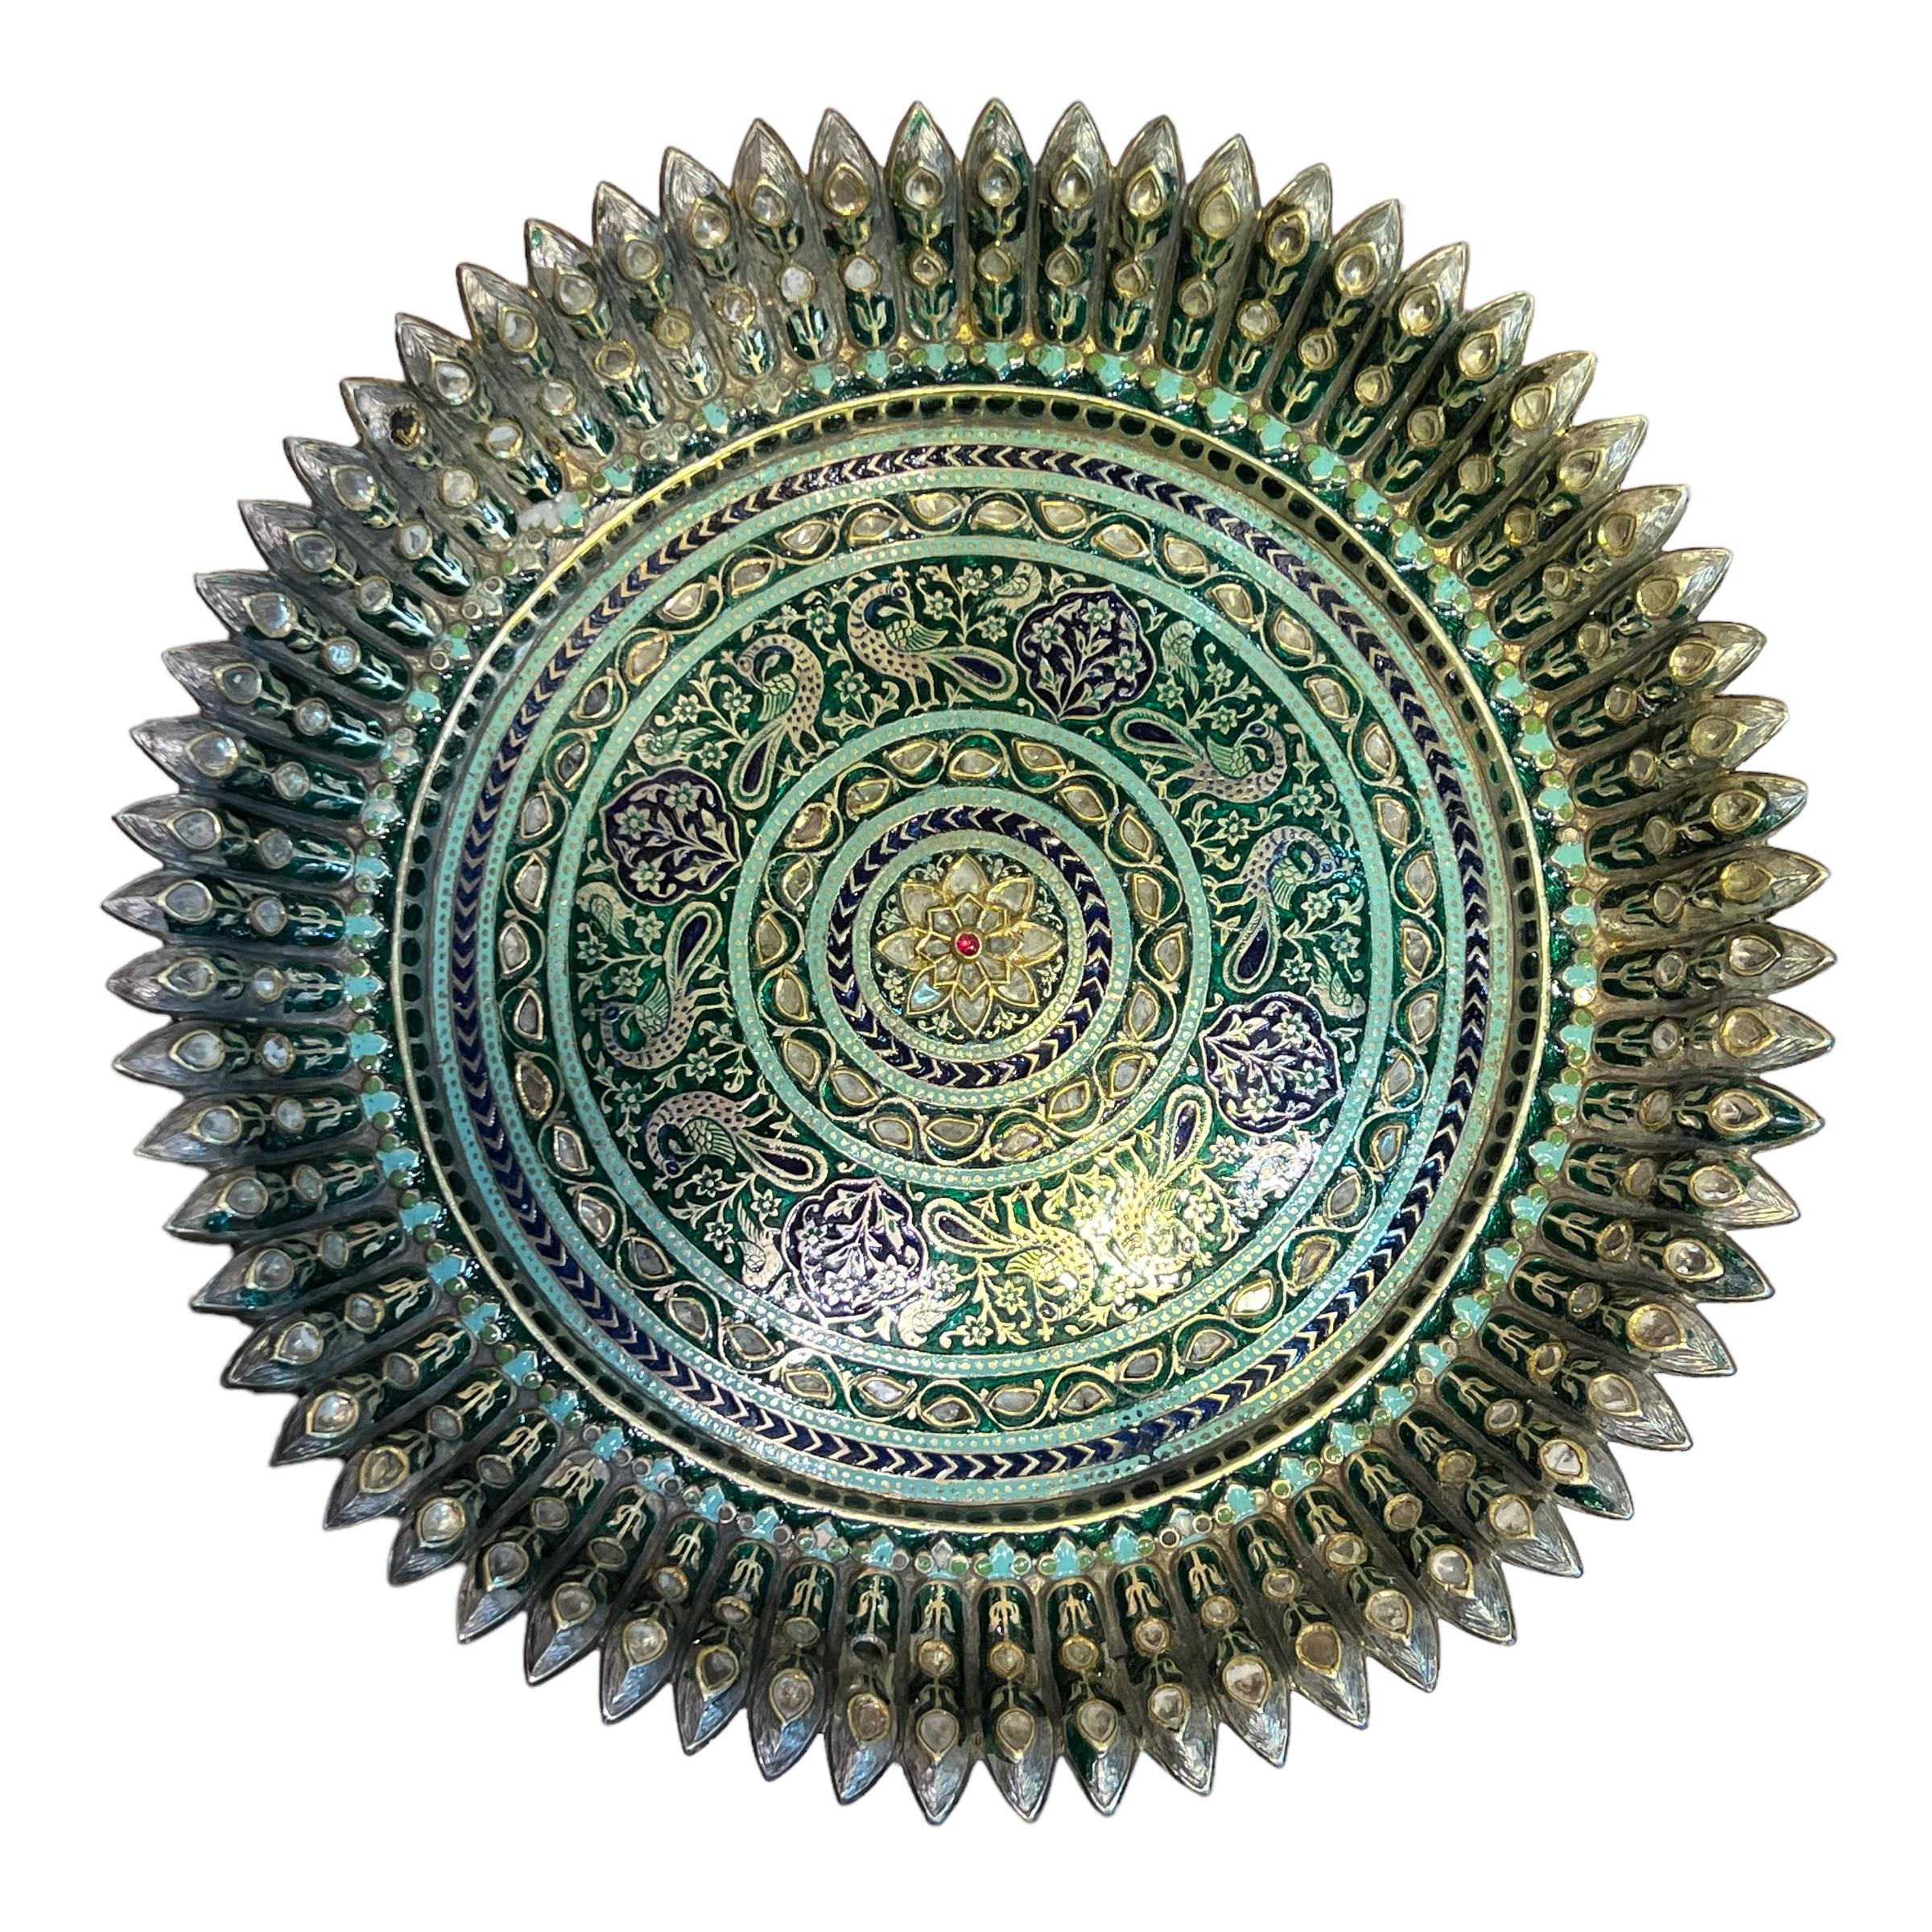 Unsere prächtige antike, mit Edelsteinen besetzte und emaillierte silber-vergoldete Tazza aus Nordindien, um 1800, zeigt eine lotusförmige Schale, die mit konzentrischen Ringen aus Vogel-, Blumen- und geometrischen Motiven in grüner, blaugrüner und